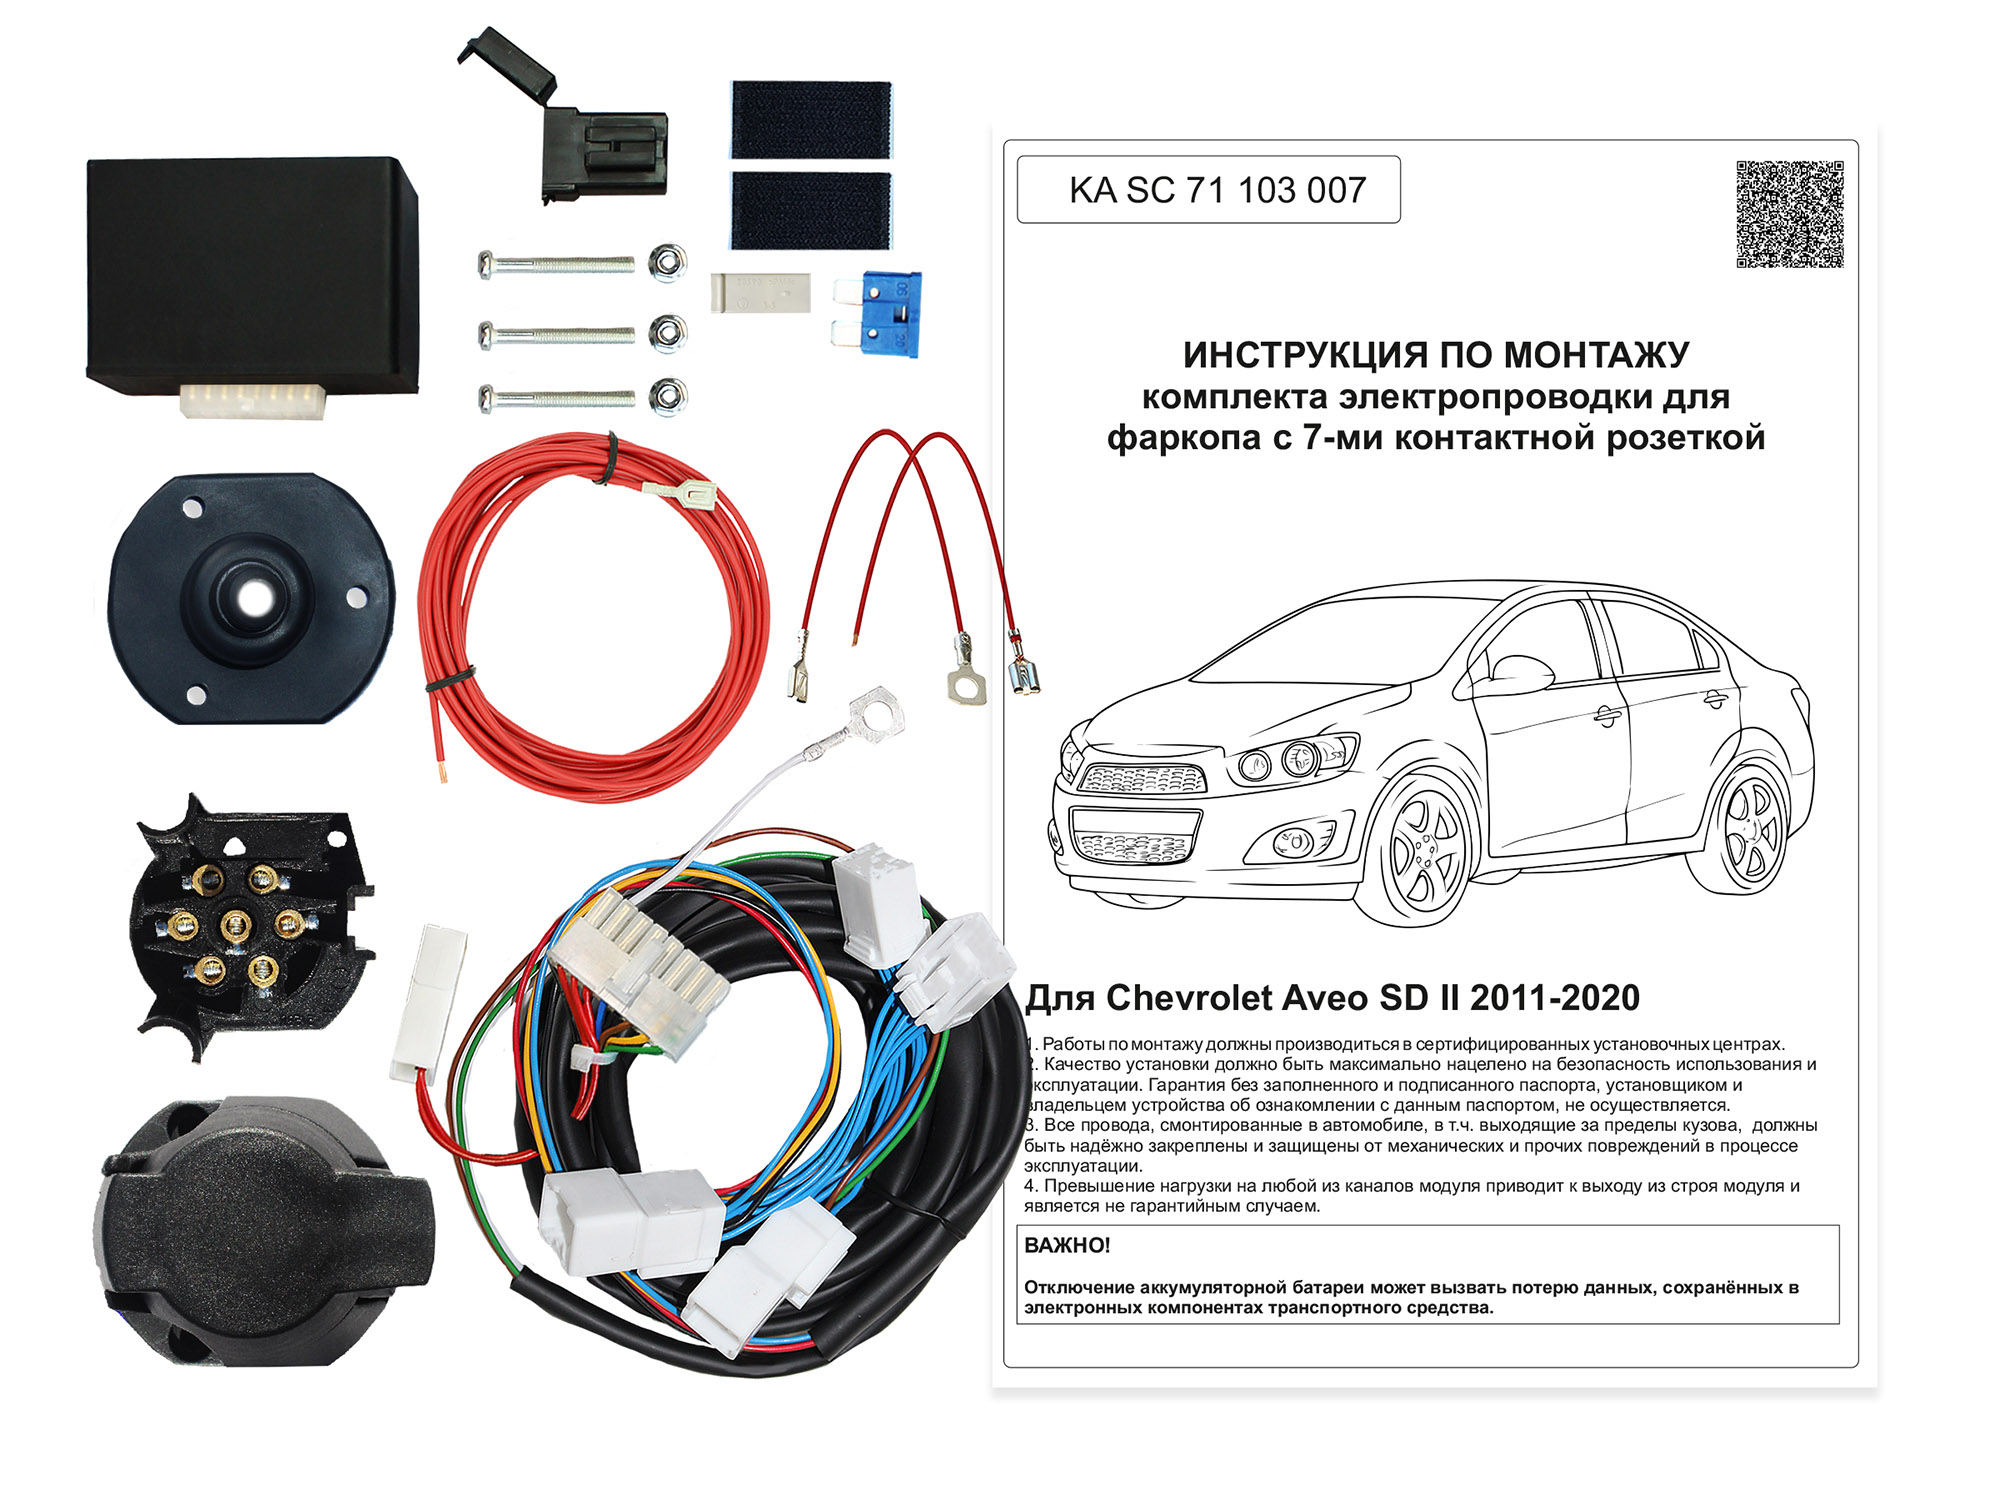 Штатная электрика с блоком согласования 7-полюсная Концепт Авто для Chevrolet Aveo седан (2011-2020)